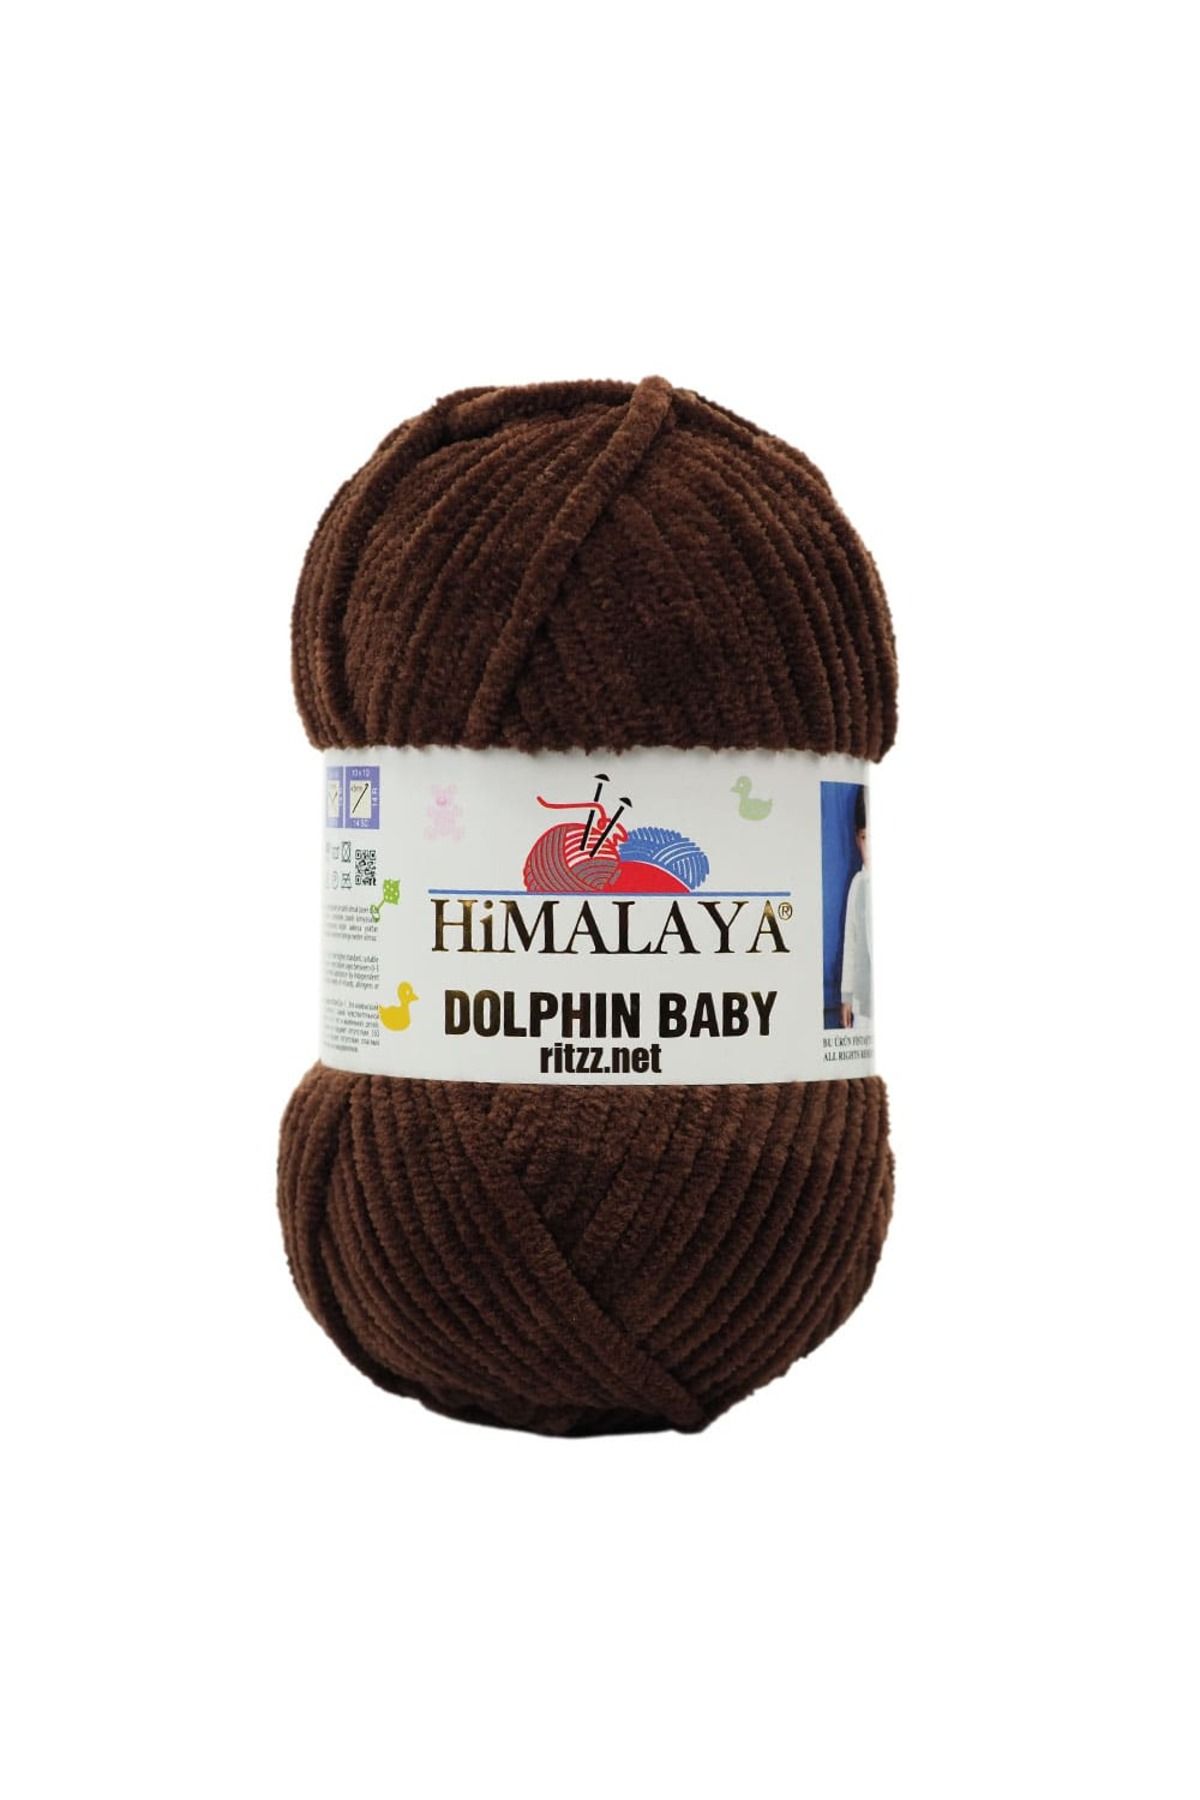 Himalaya Dolphin Baby 80336 Koyu Kahve